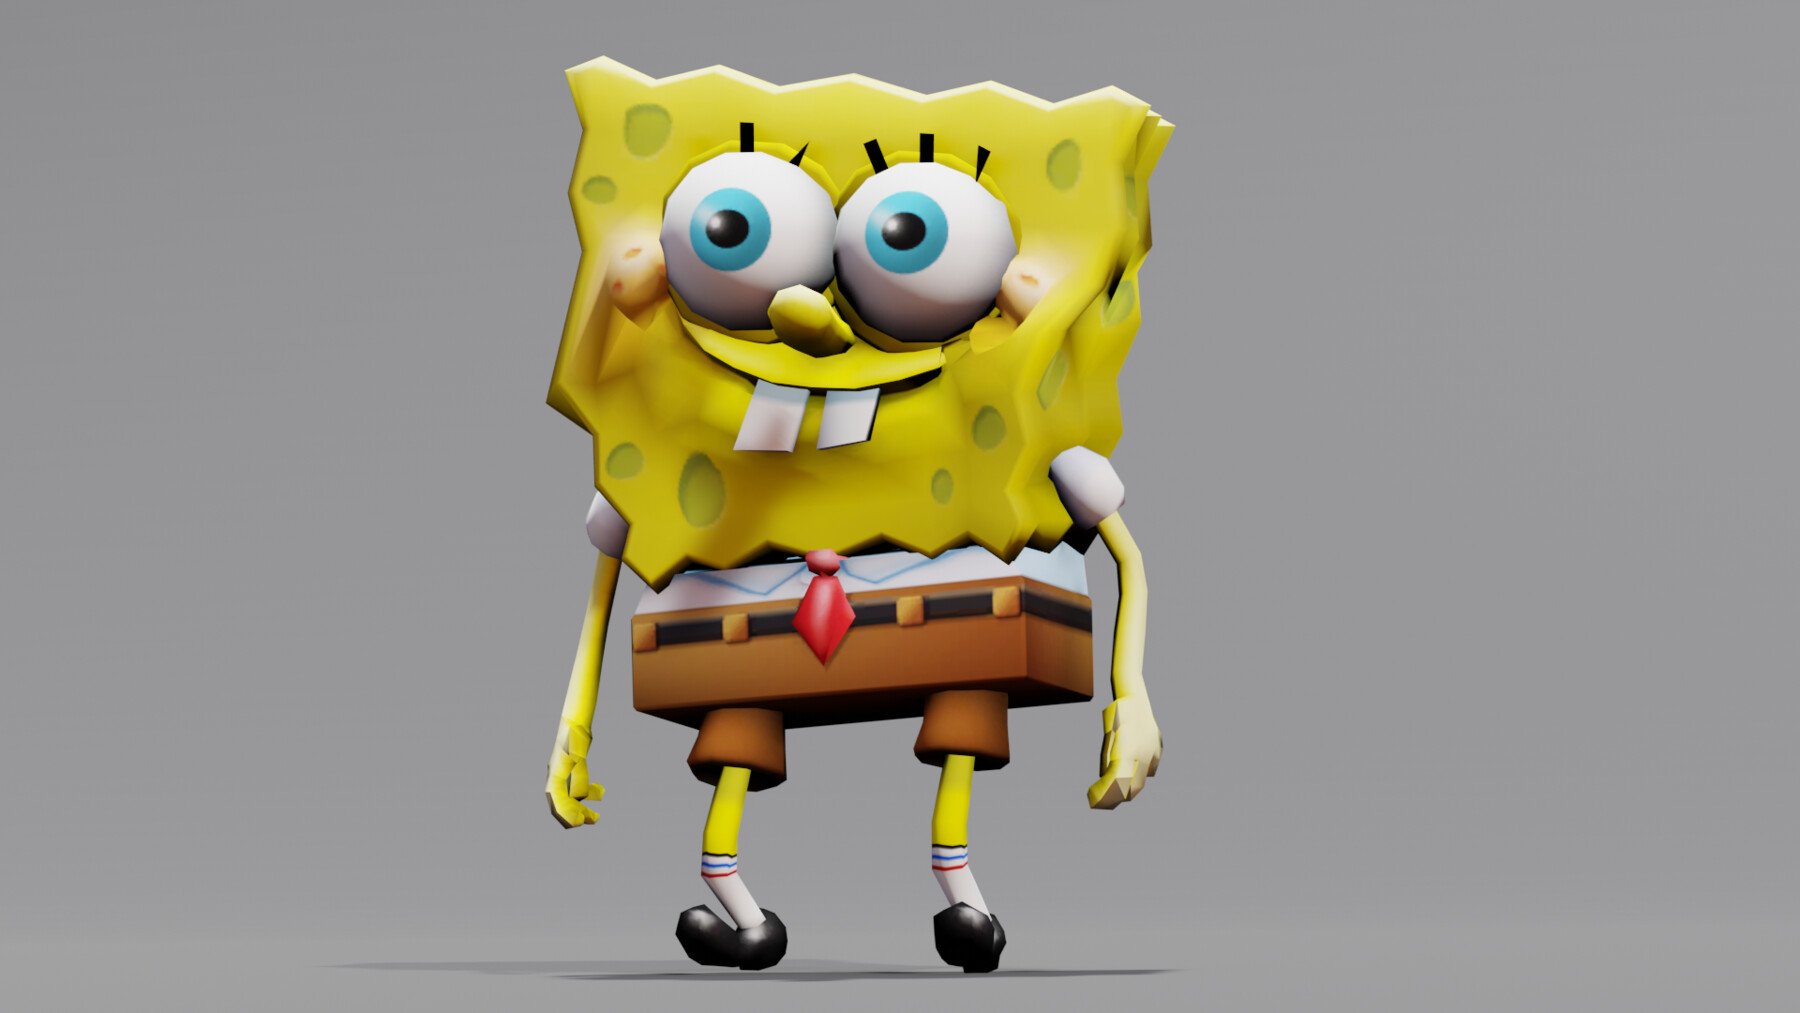 ArtStation - Dancing Spongebob 3D model | Game Assets